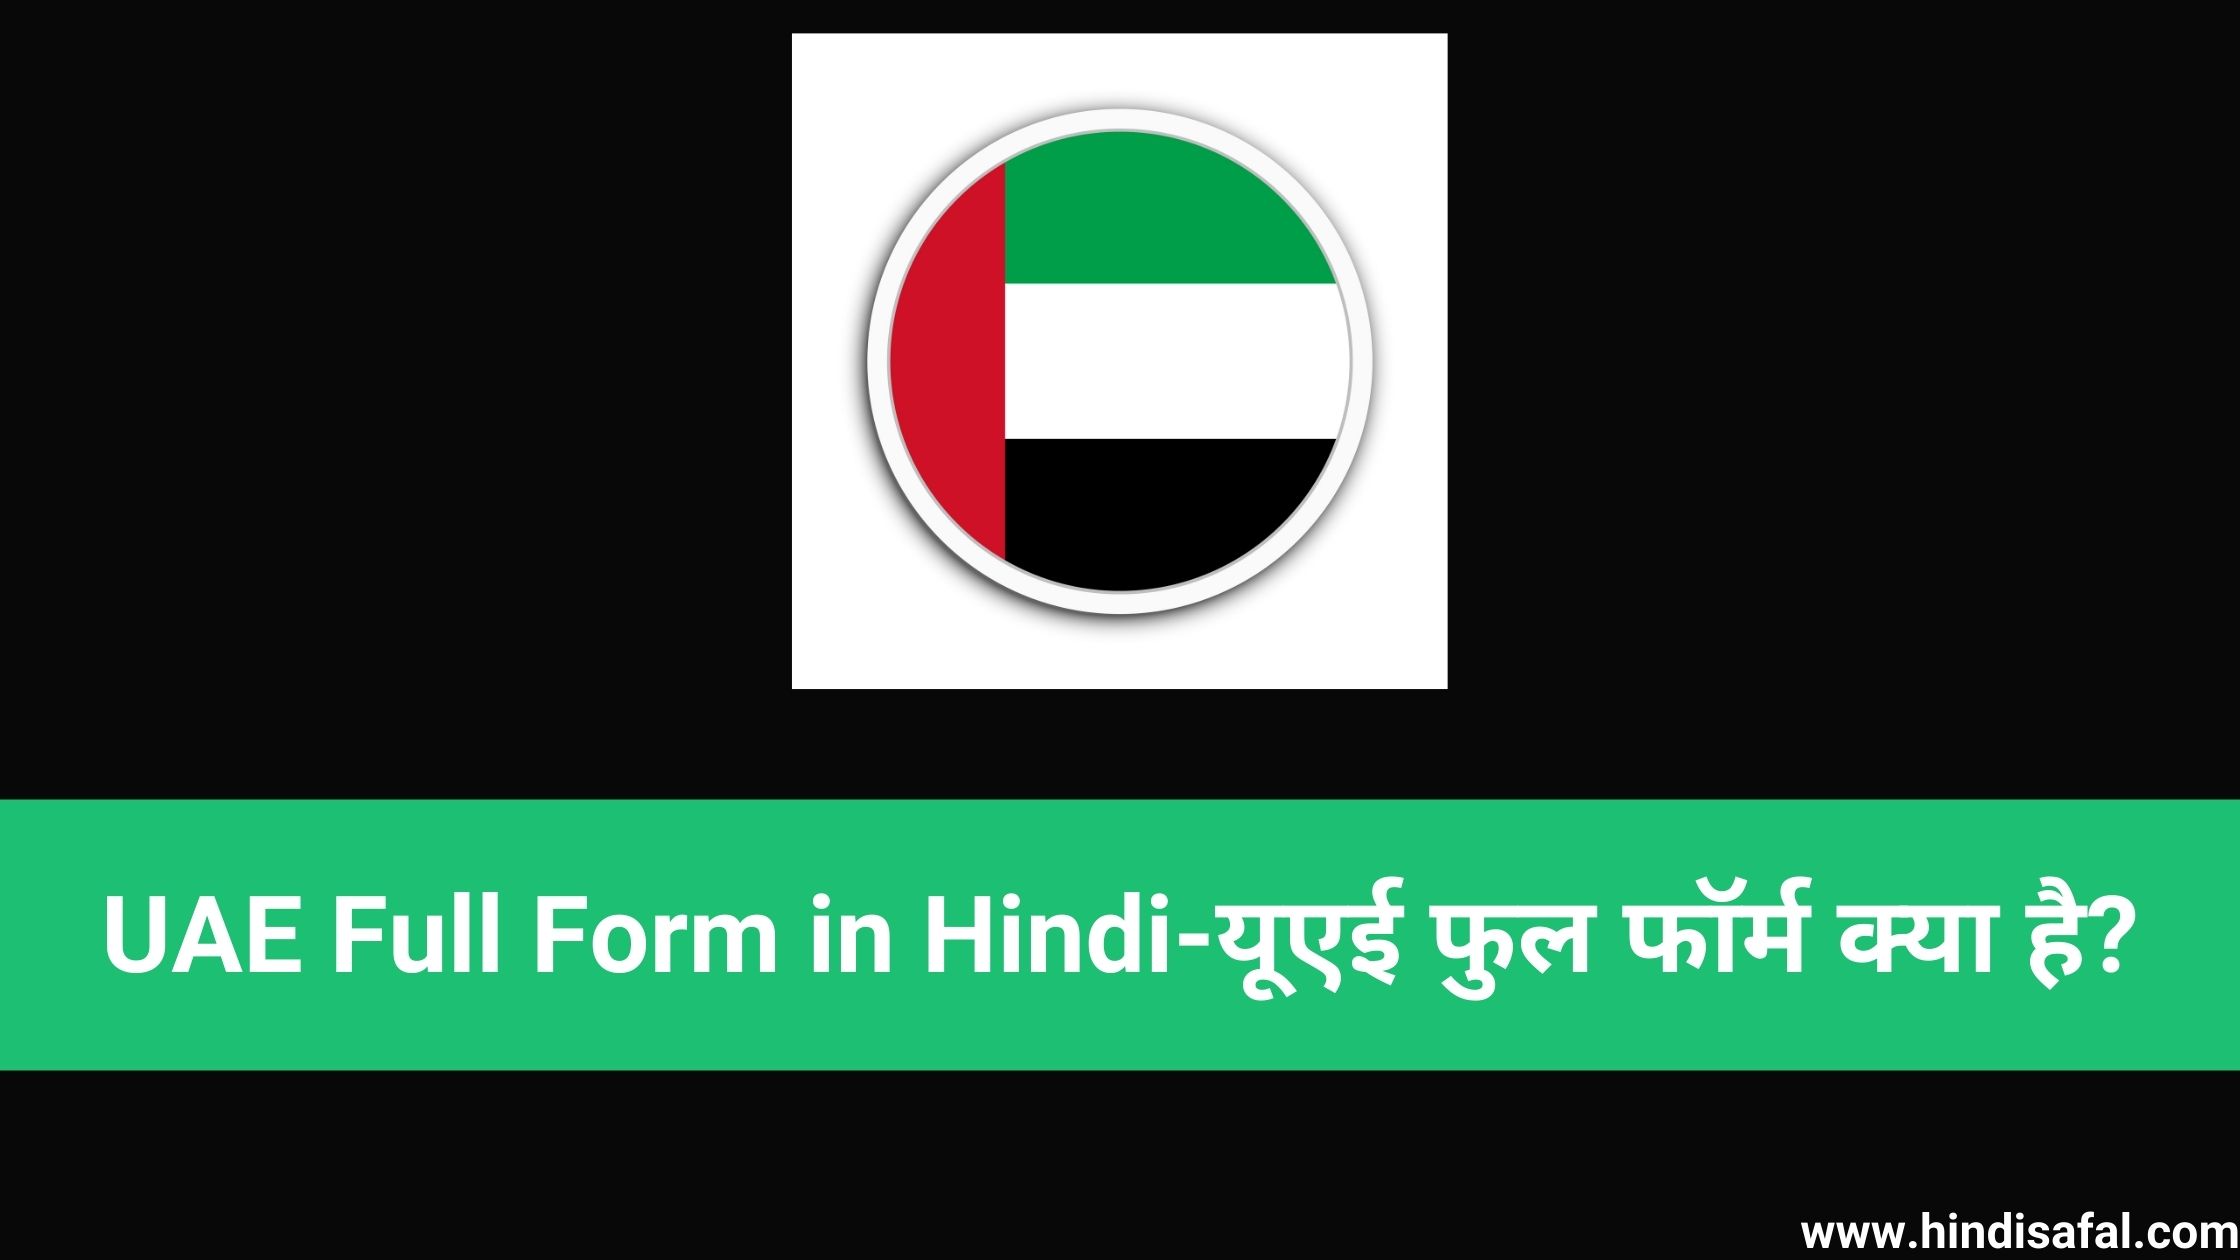 UAE Full Form in Hindi-यूएई फुल फॉर्म क्या है?